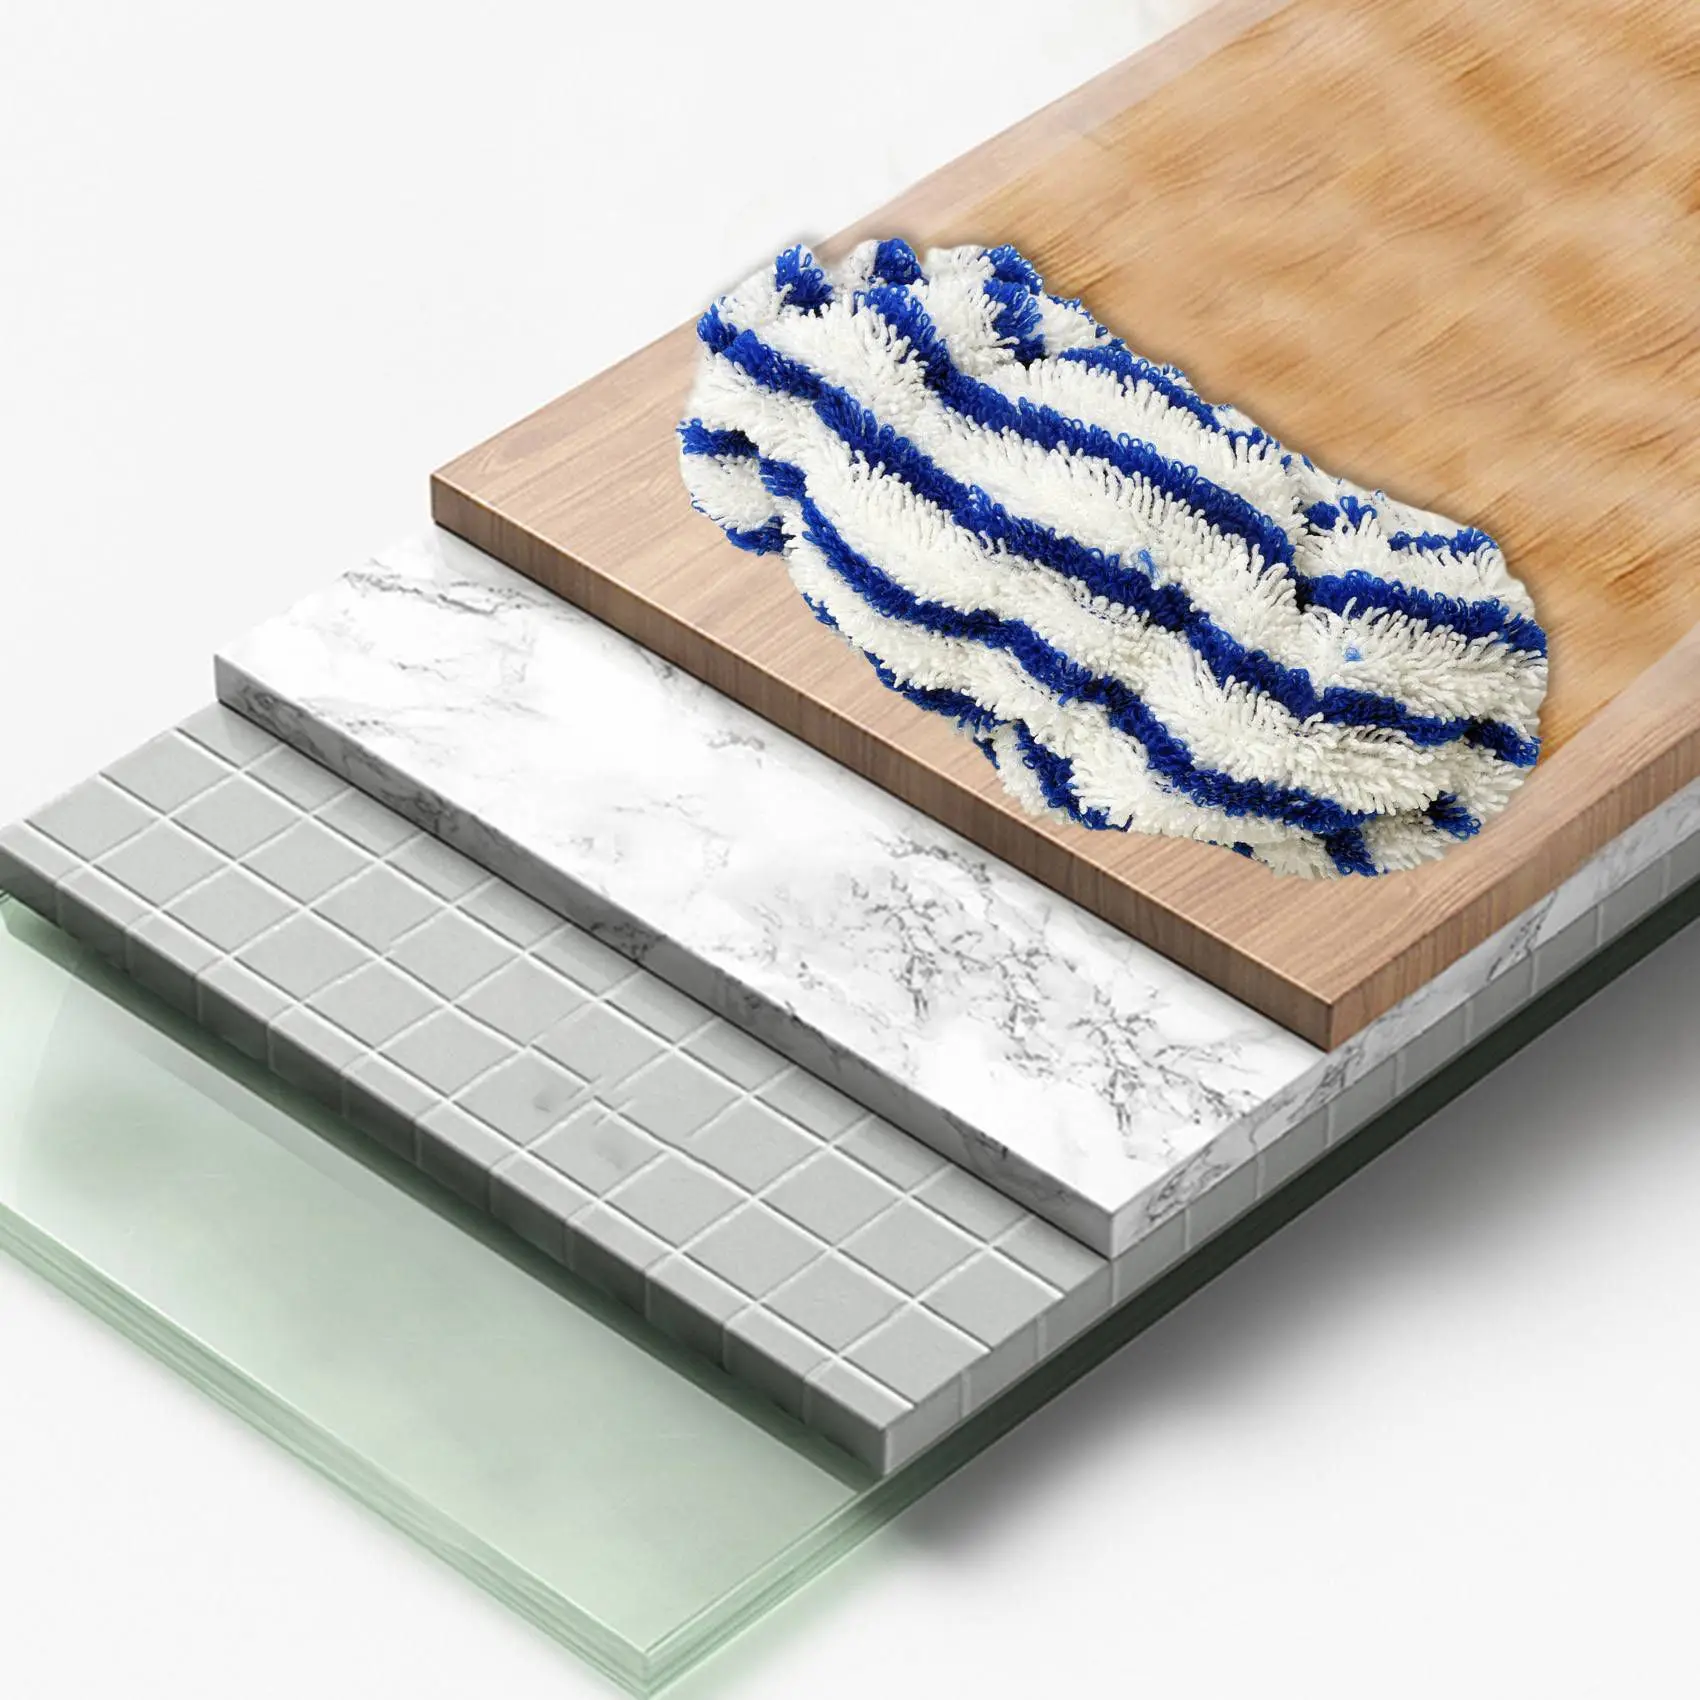 Сменные салфетки из микрофибры 6 шт. для Rowenta Clean & Steam ZR005801, аксессуар для чистки, моющийся и многоразовый Изображение 2 